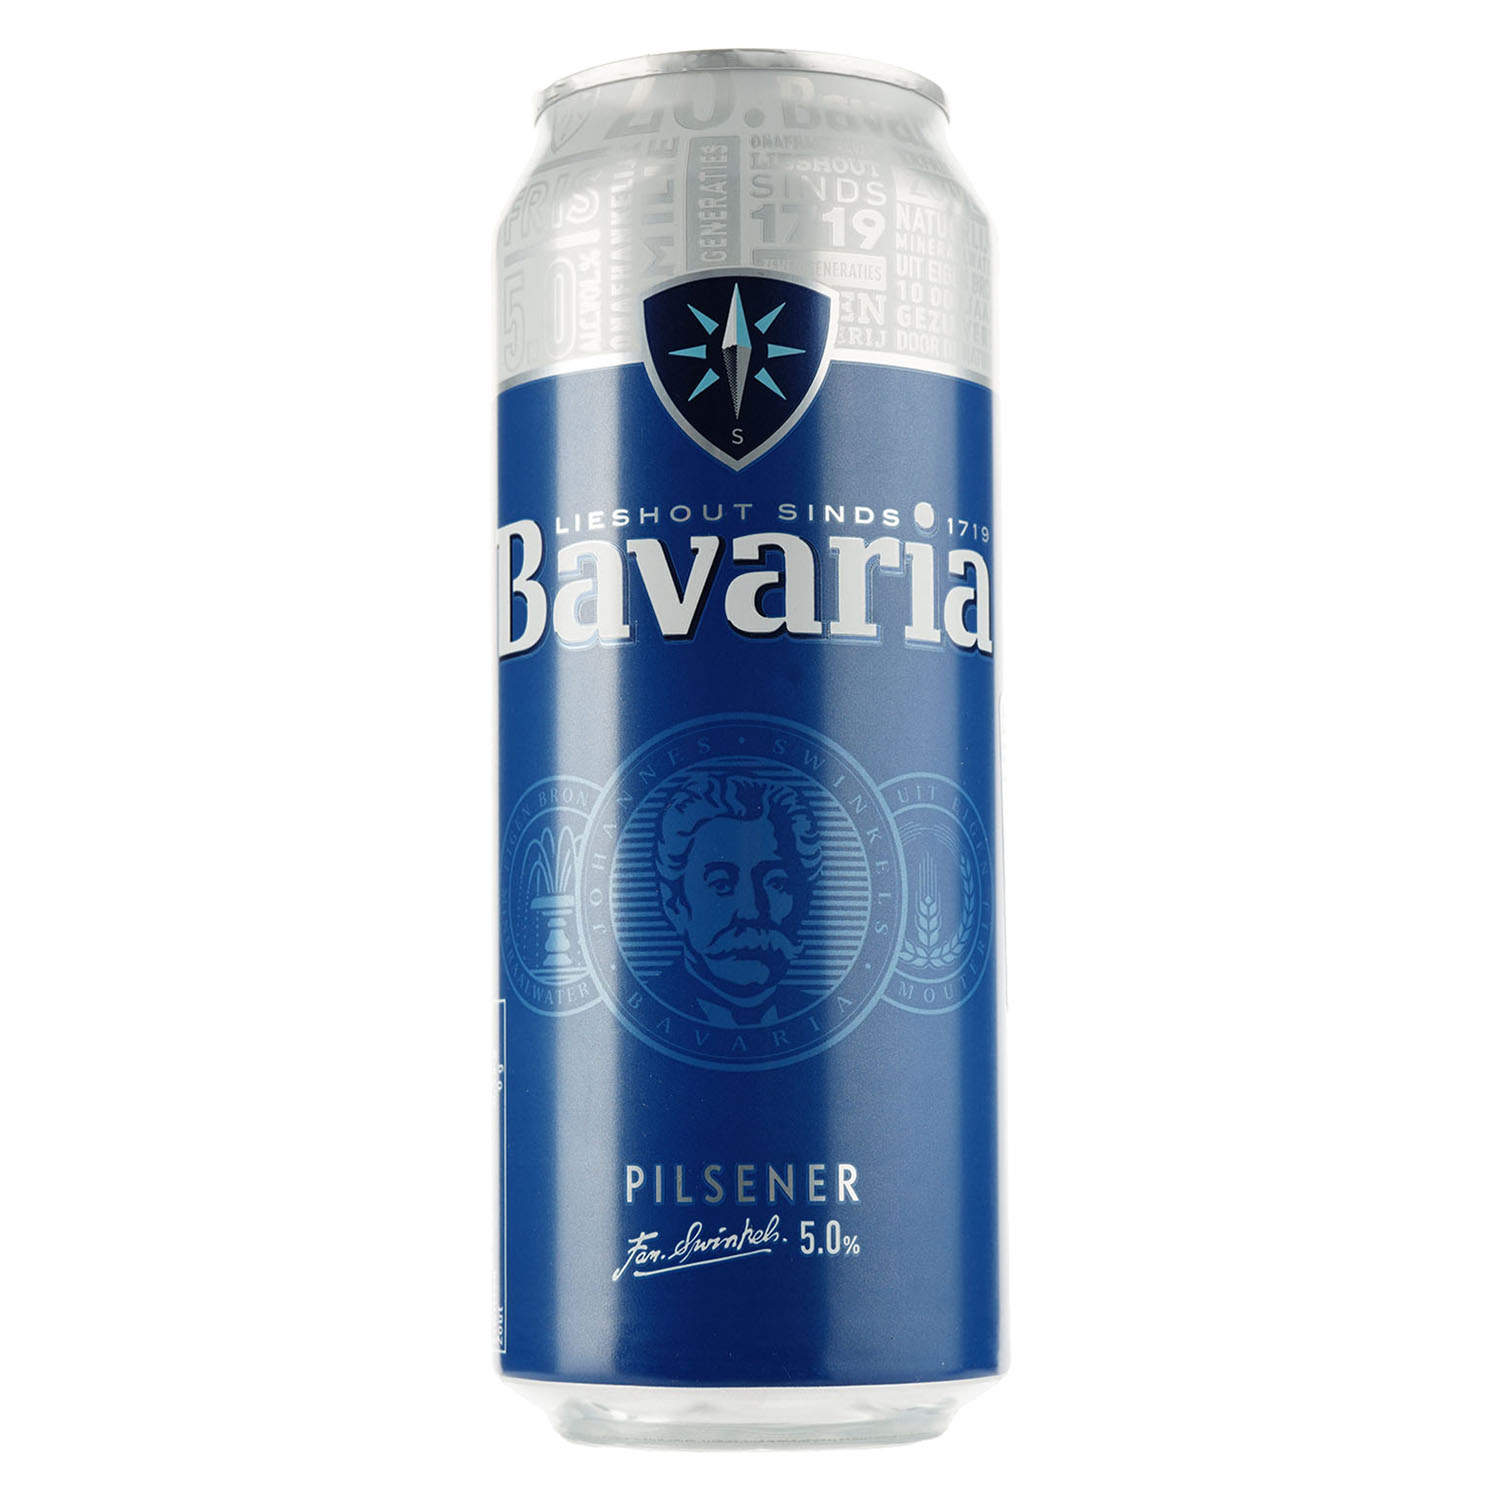 Пиво Bavaria, светлое, фильтрованное, 5%, ж/б, 0,5 л - фото 1